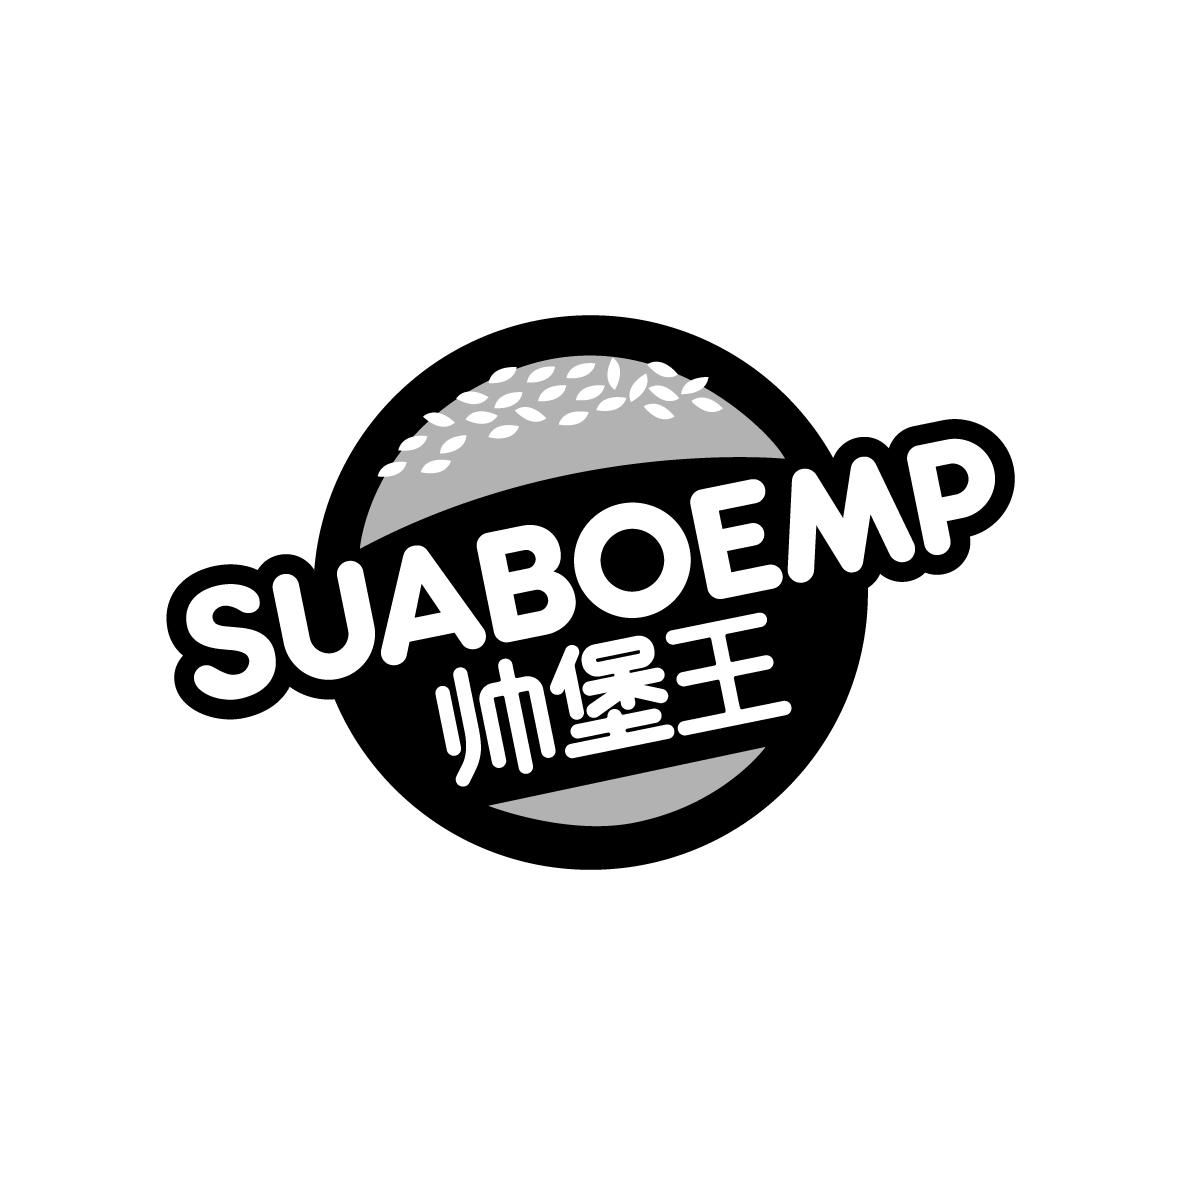 广州市龙曦生物科技有限公司商标帅堡王 SUABOEMP（43类）商标转让流程及费用